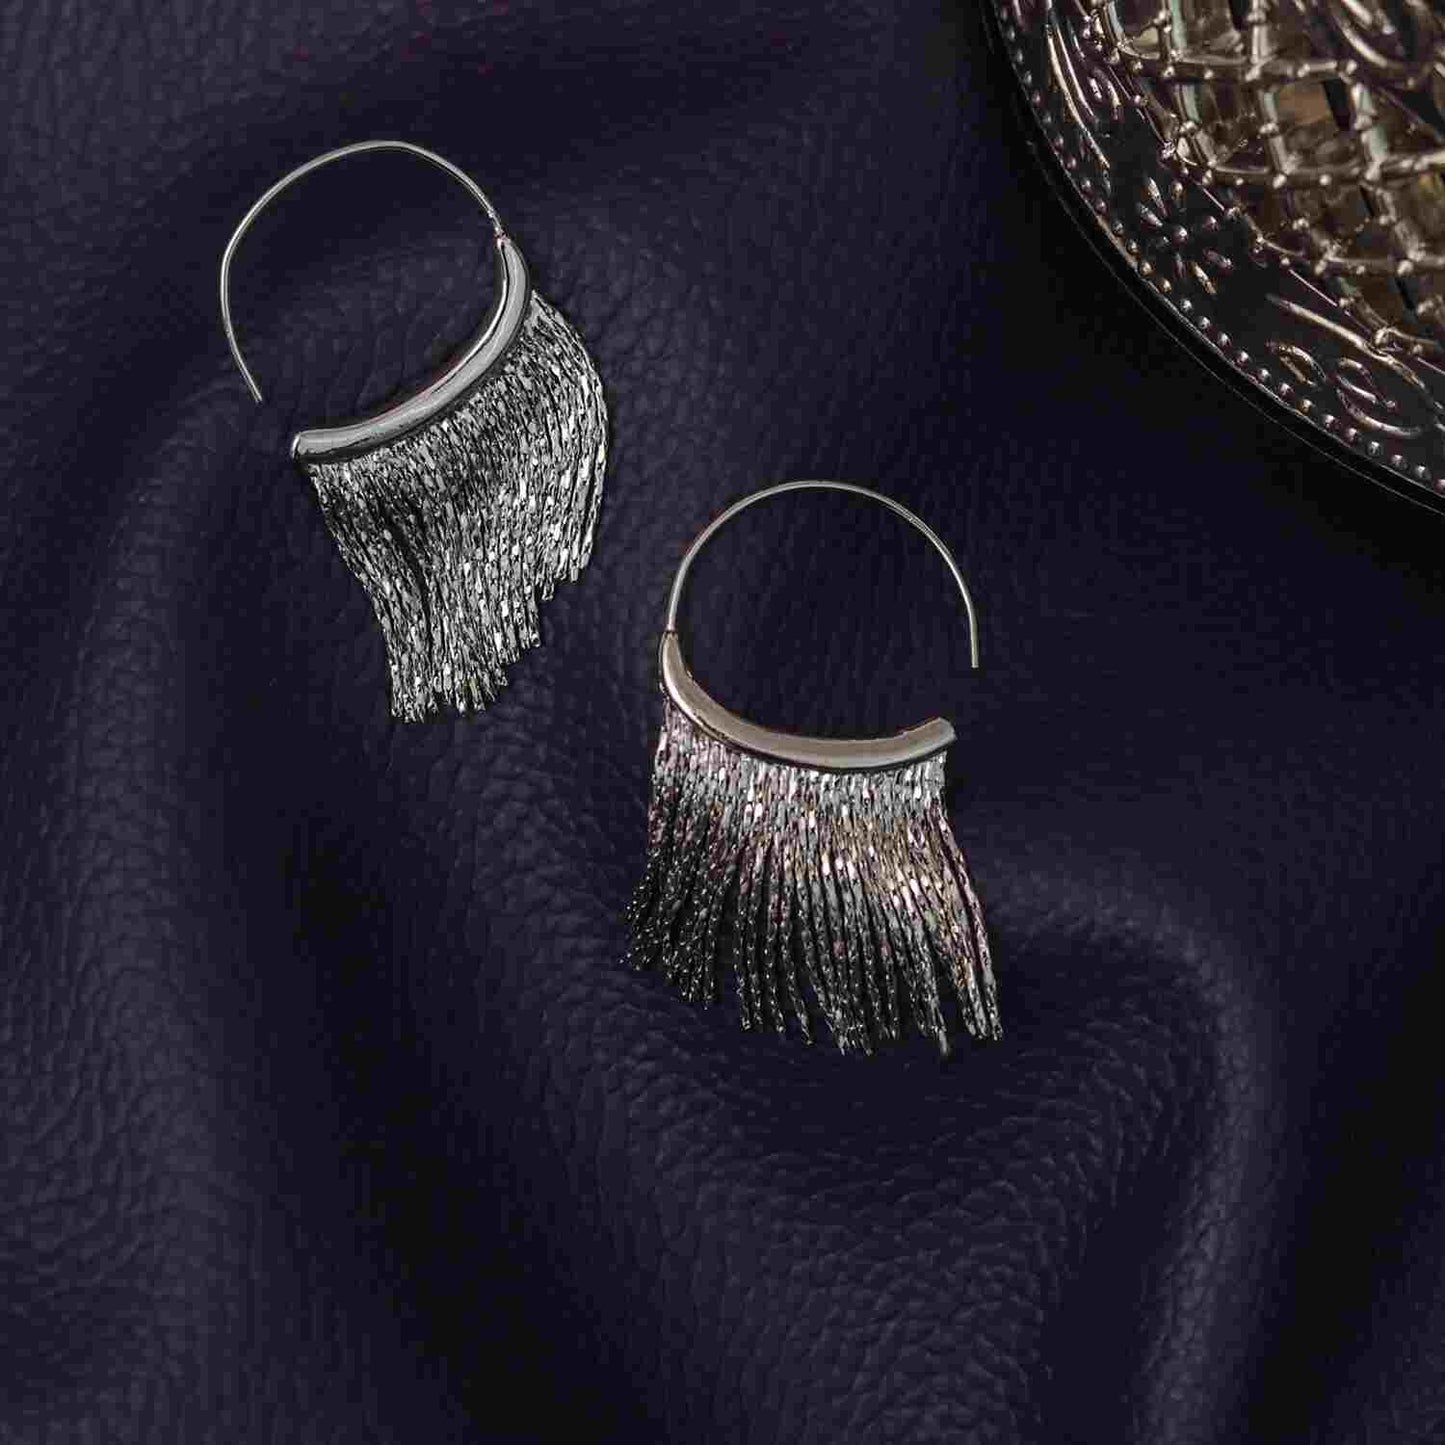 Long Earrings for Women | Dangle Earrings | Costume Jewelry